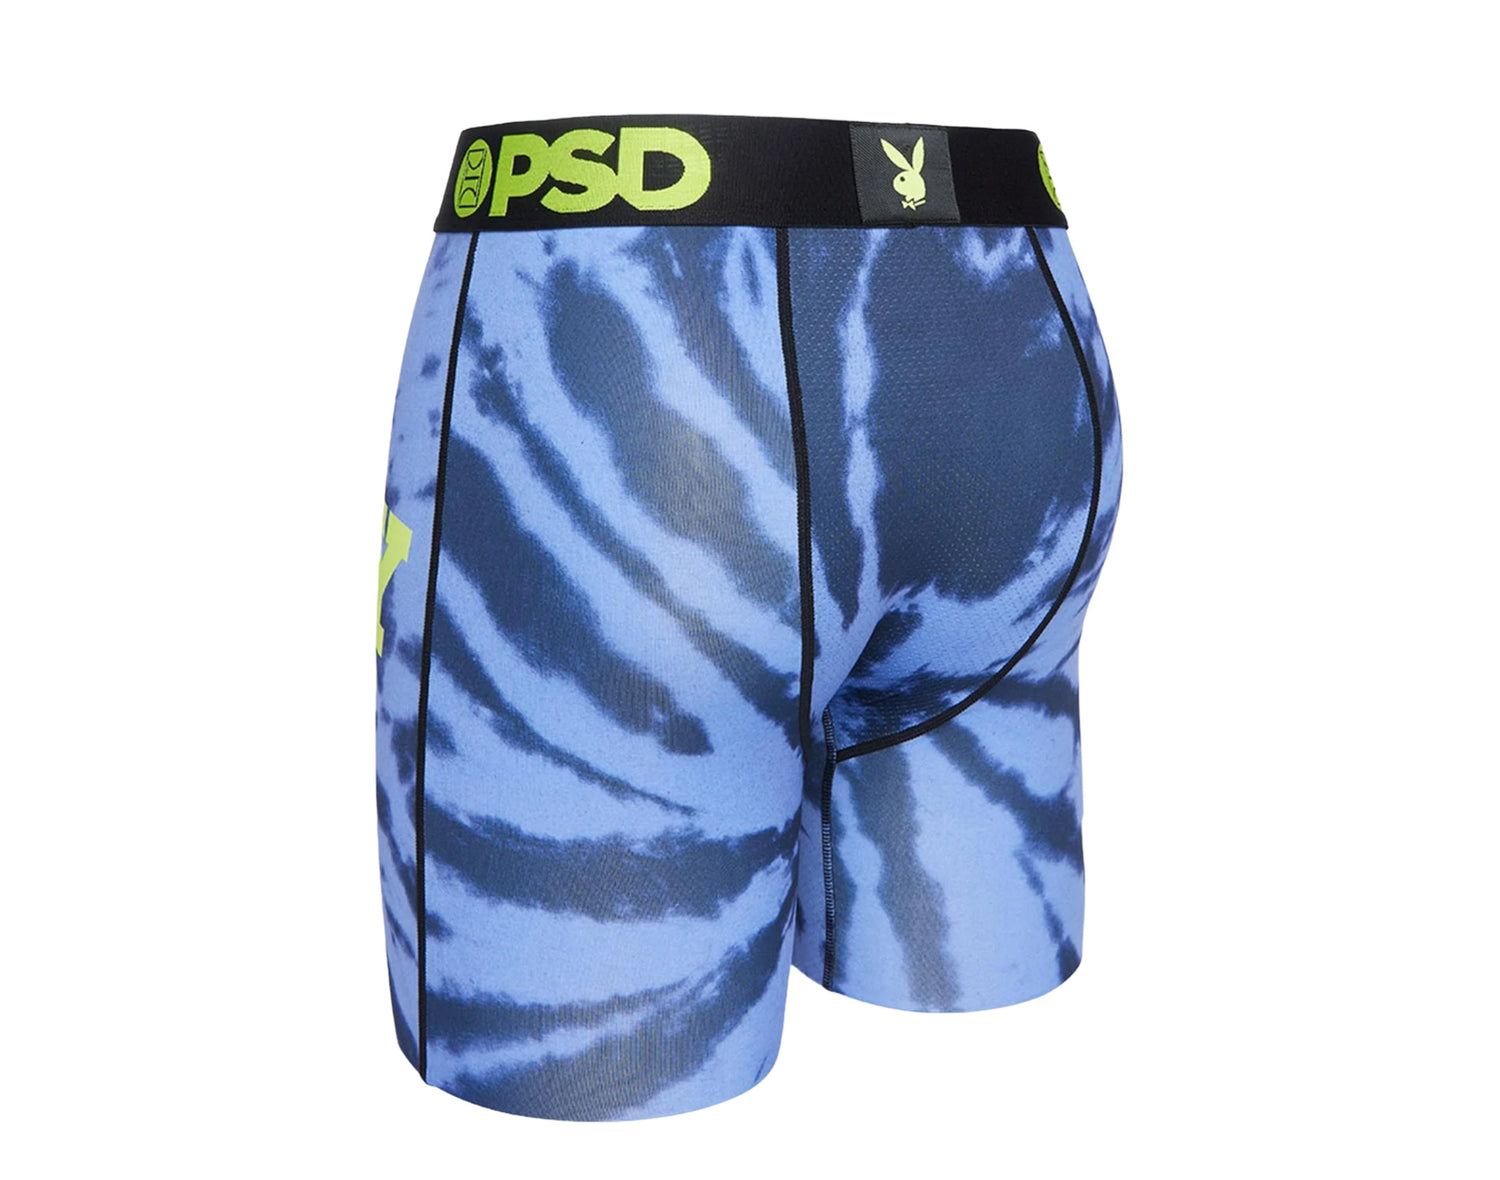 PSD x Playboy - Tie Dye Logo Briefs Men's Underwear